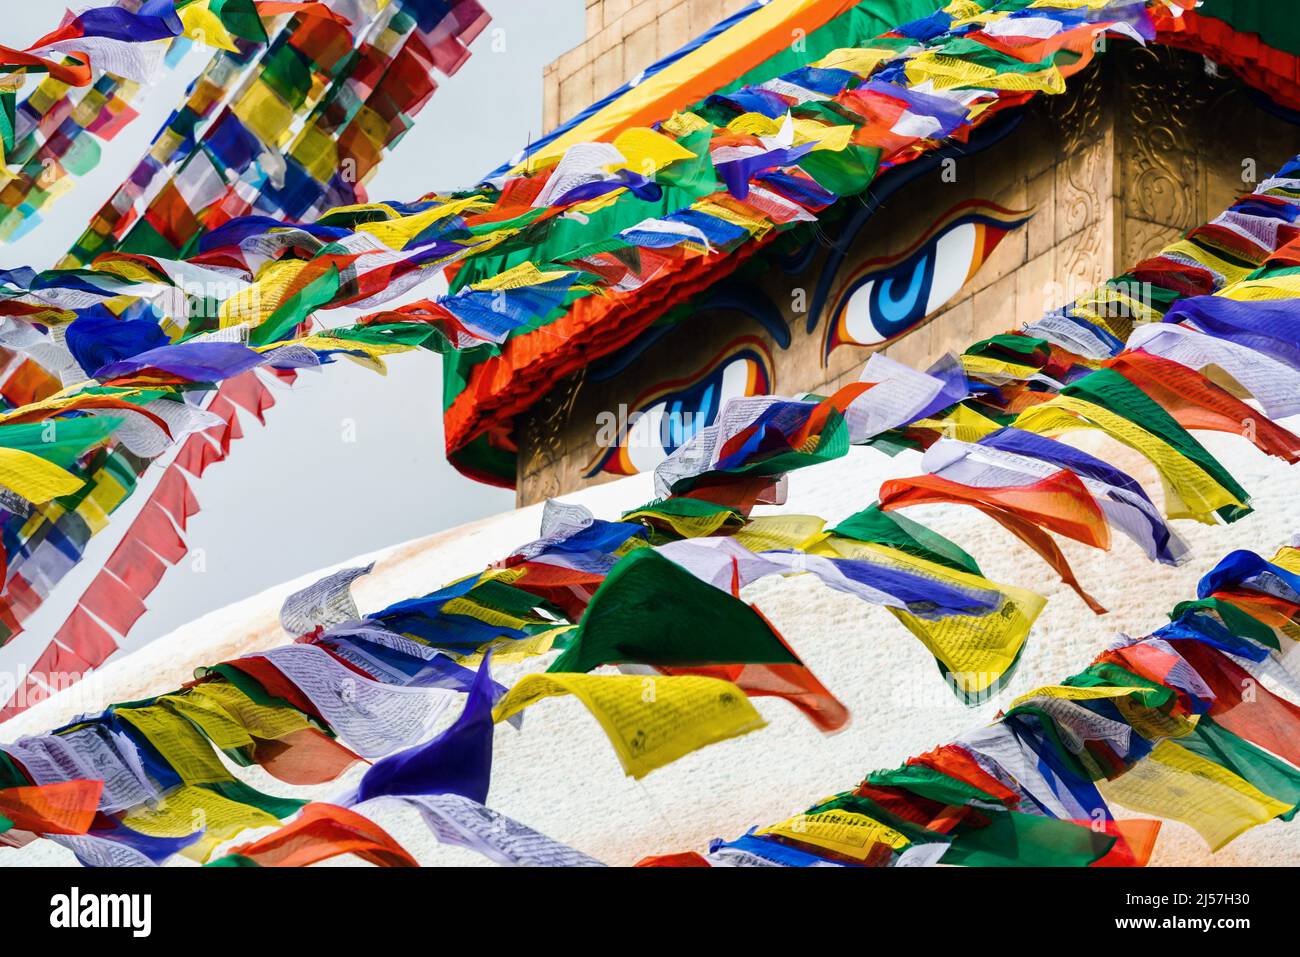 Les drapeaux bouddhistes volent devant les yeux magiques Bodnath Stupa, temple bouddhiste à Katmandou, Népal Banque D'Images